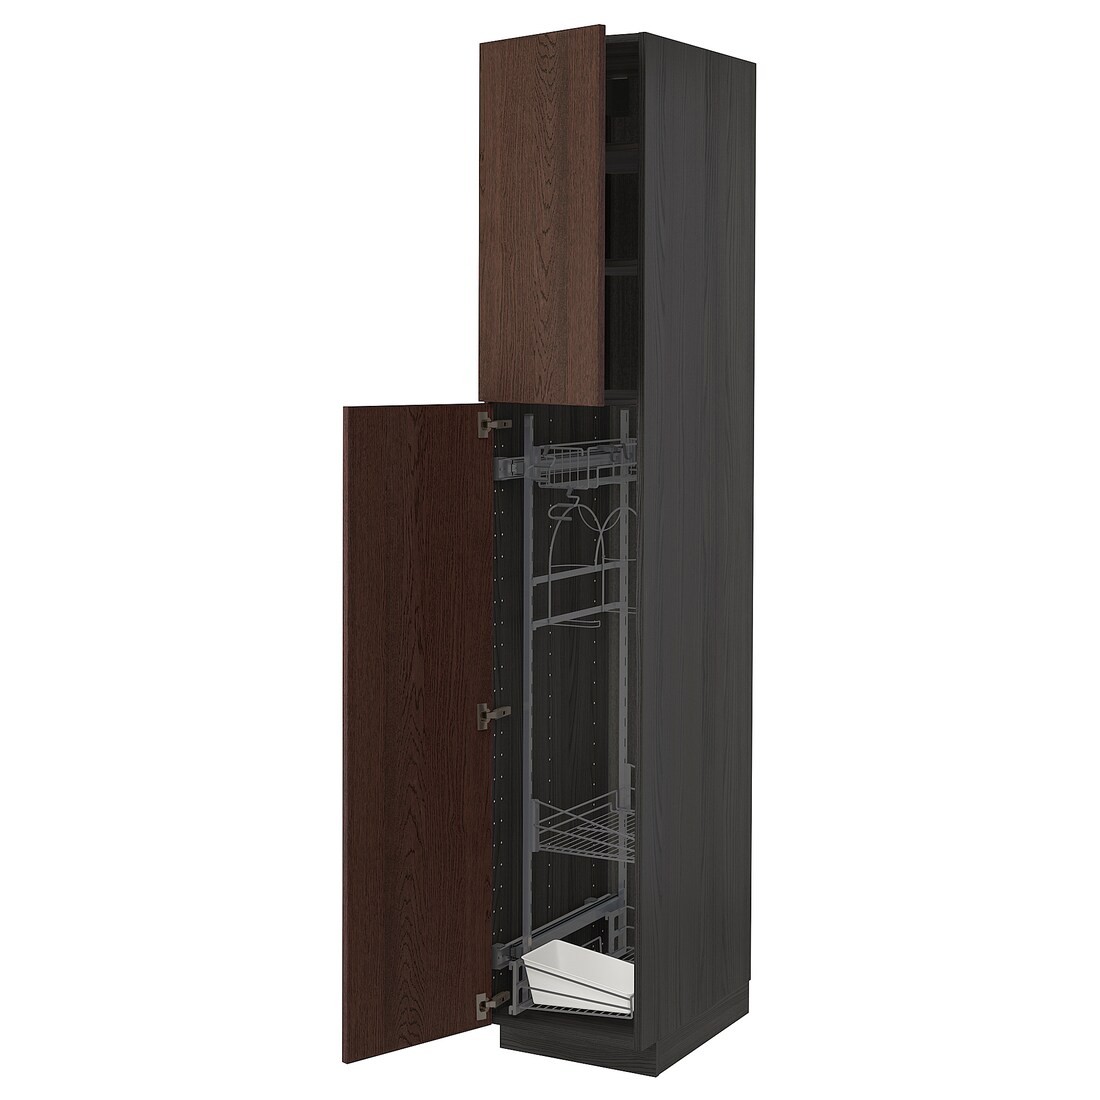 METOD МЕТОД Высокий шкаф с отделением для аксессуаров для уборки, черный / Sinarp коричневый, 40x60x220 см